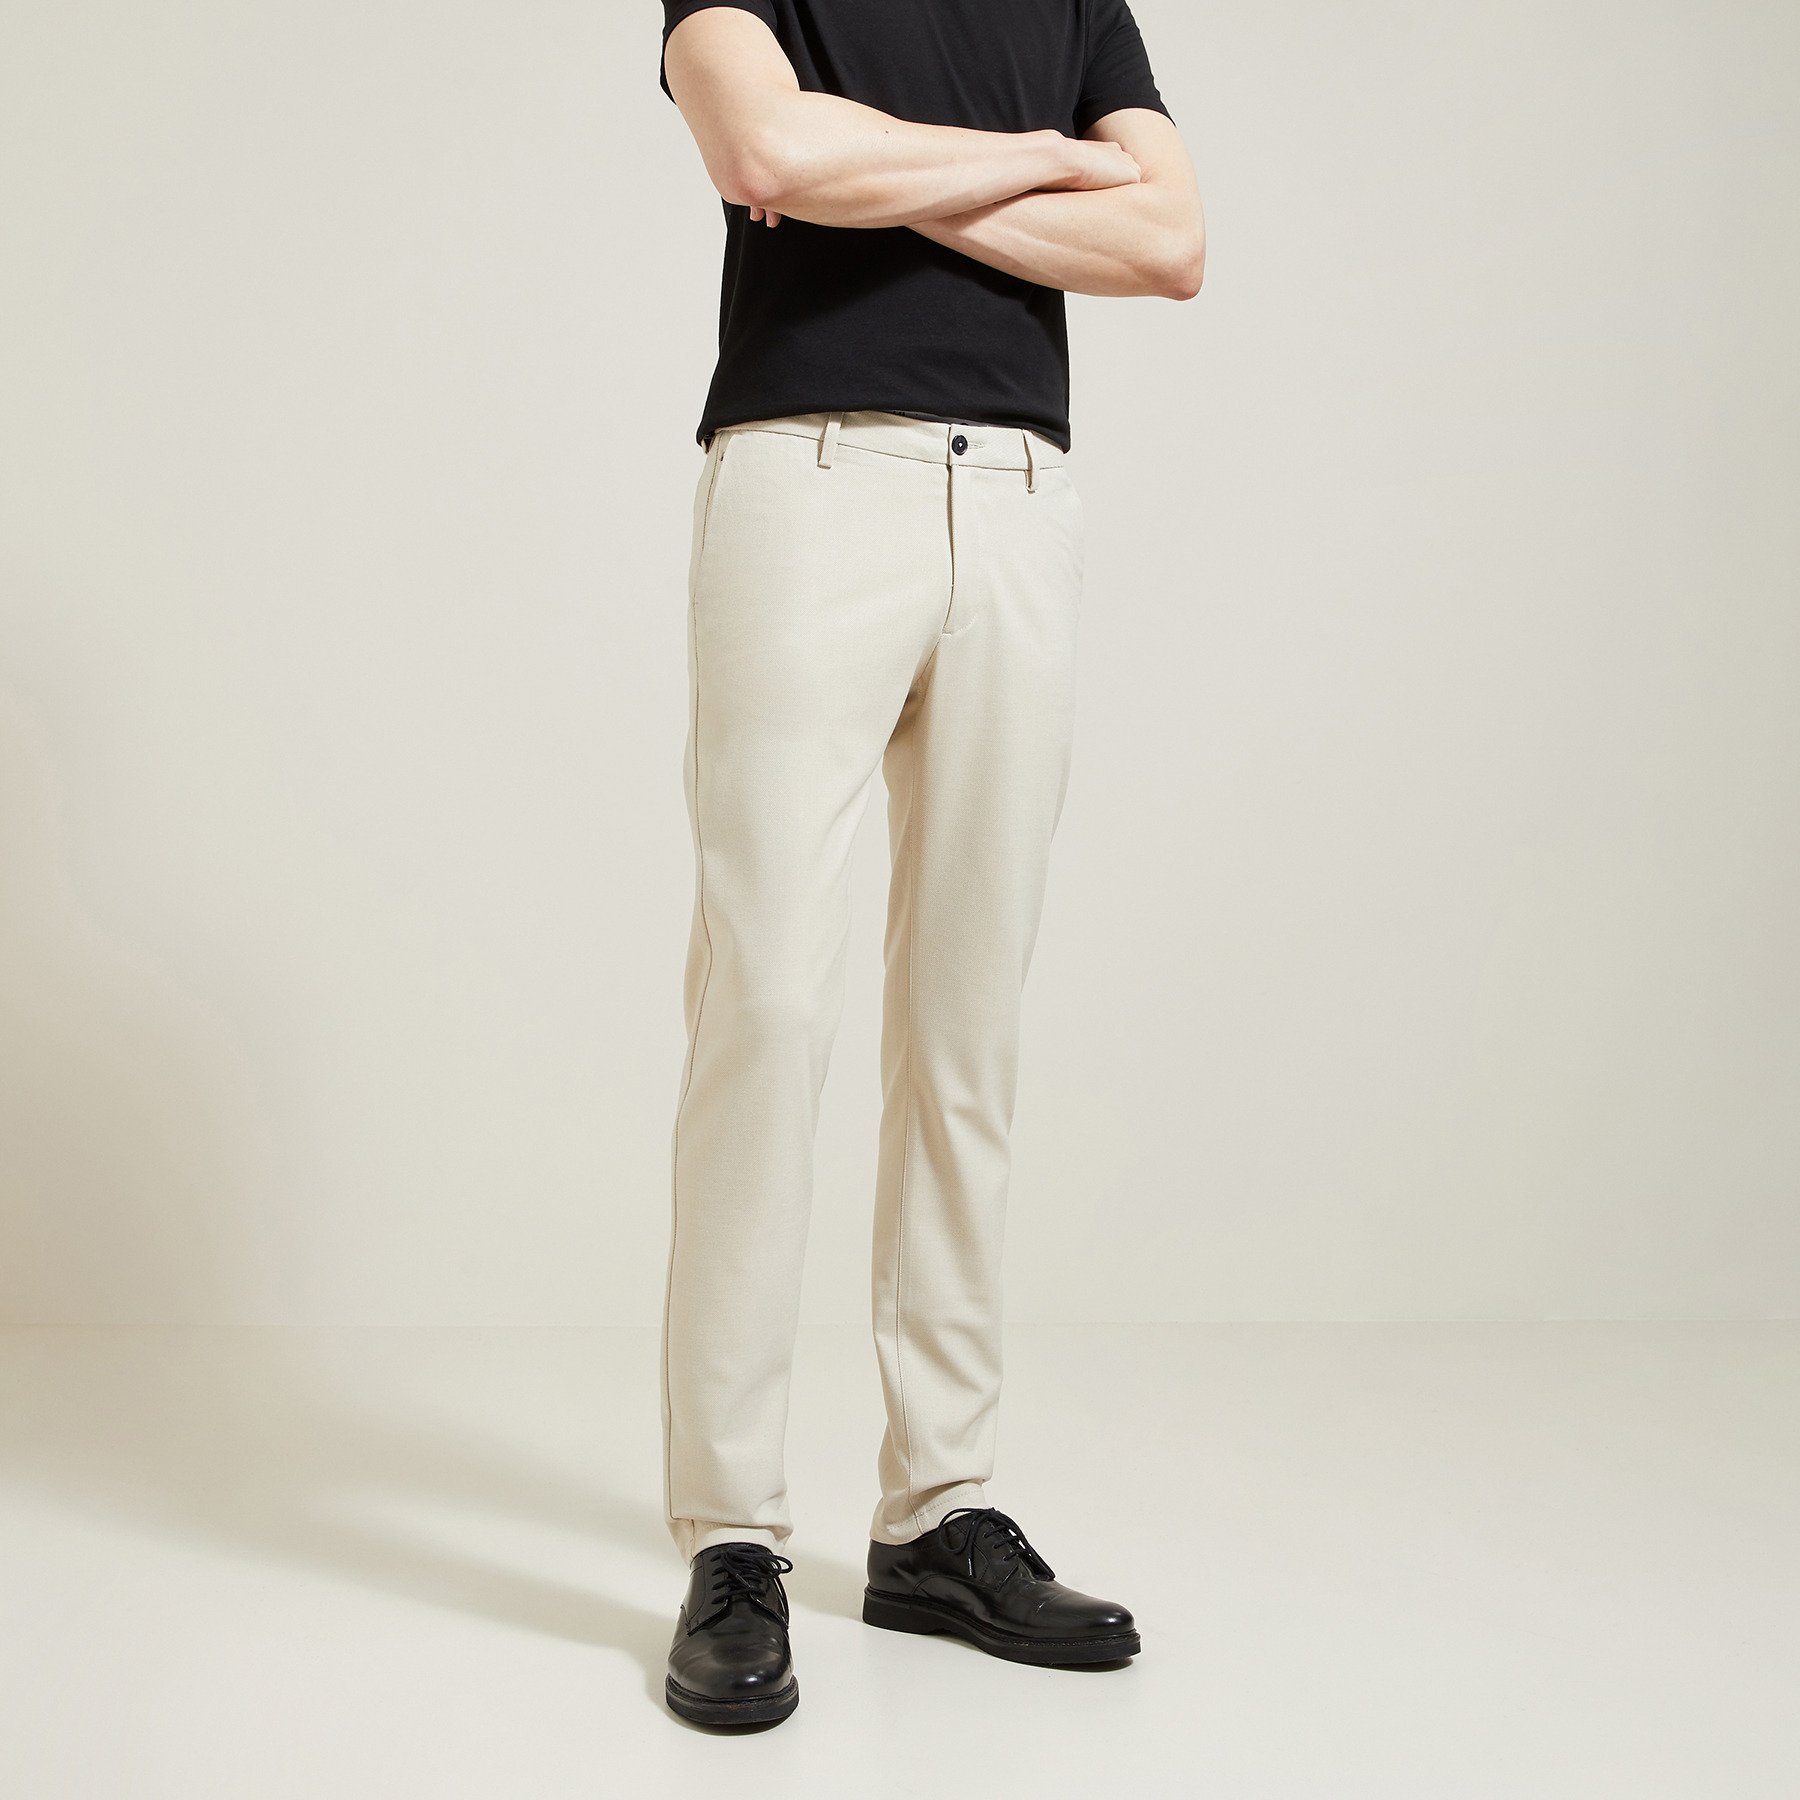 Pantalon chino slim en twill bi-ton Ecru 36 65% Polyester, 33% Polyamide, 2% Elasthanne Homme